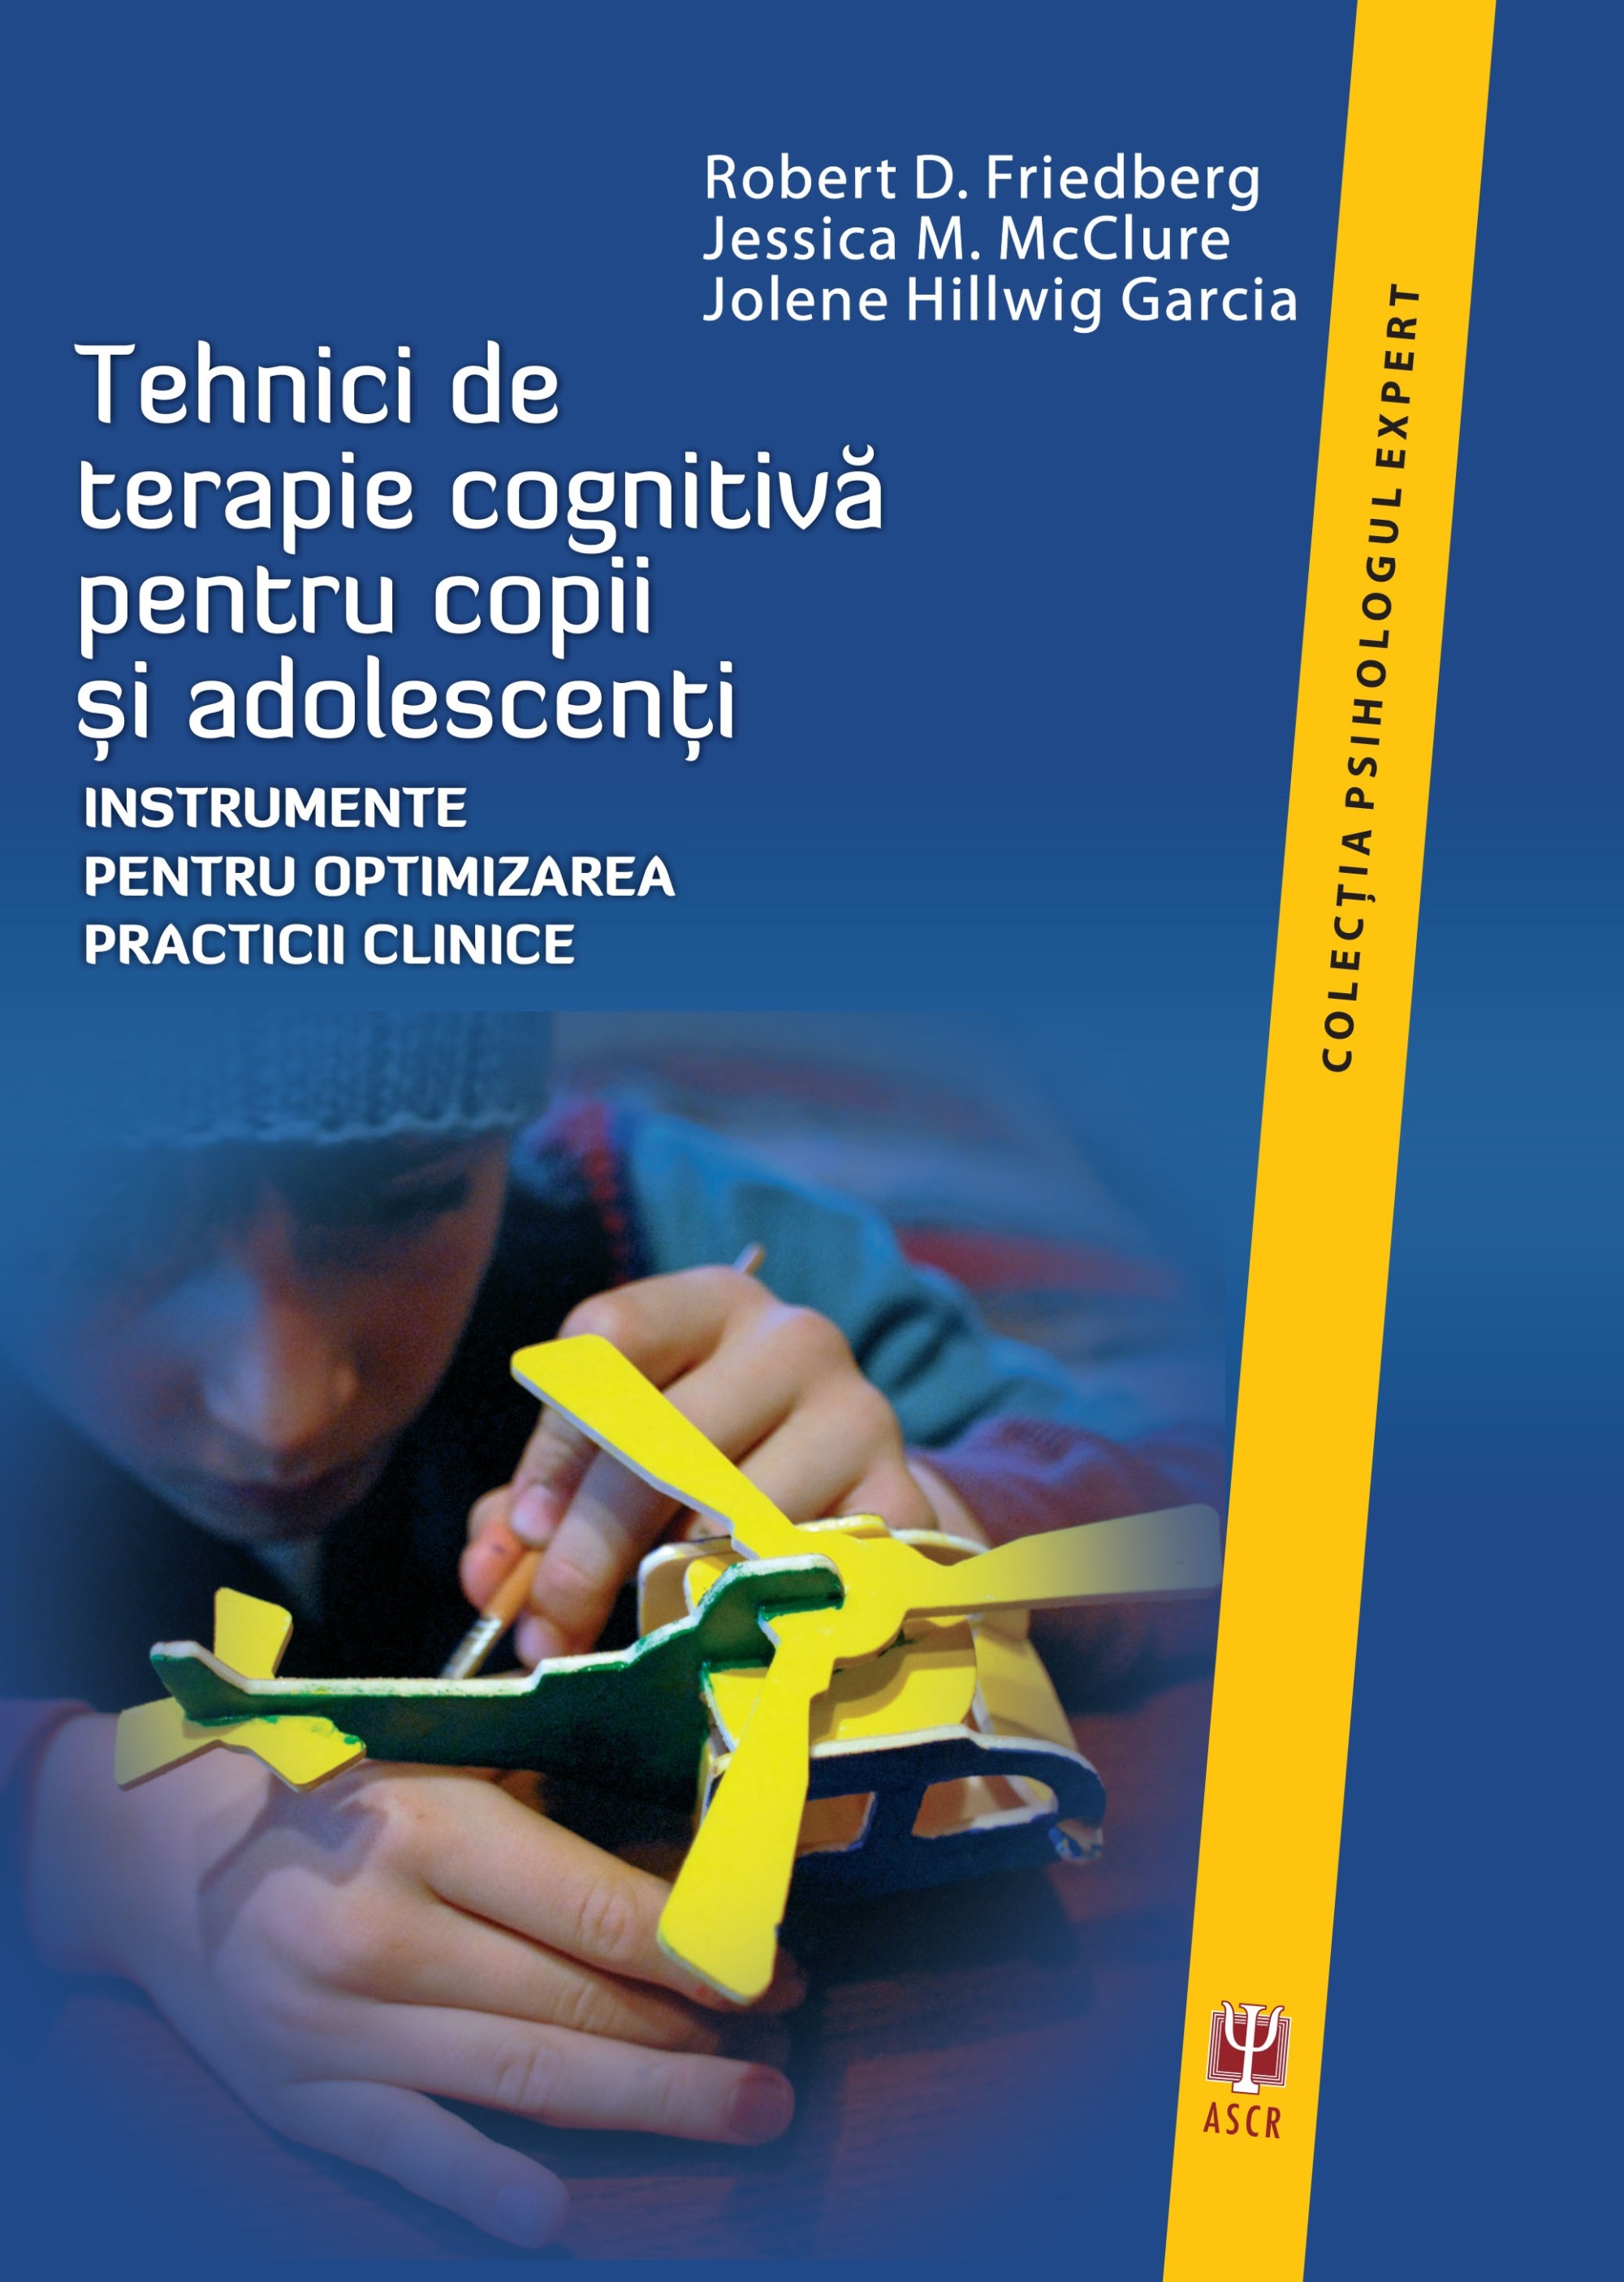 Tehnici de terapie cognitiva pentru copii și adolescenti | Robert D. Friedberg, Jessica M. McClure, Jolene Hillwig Garcia ASCR